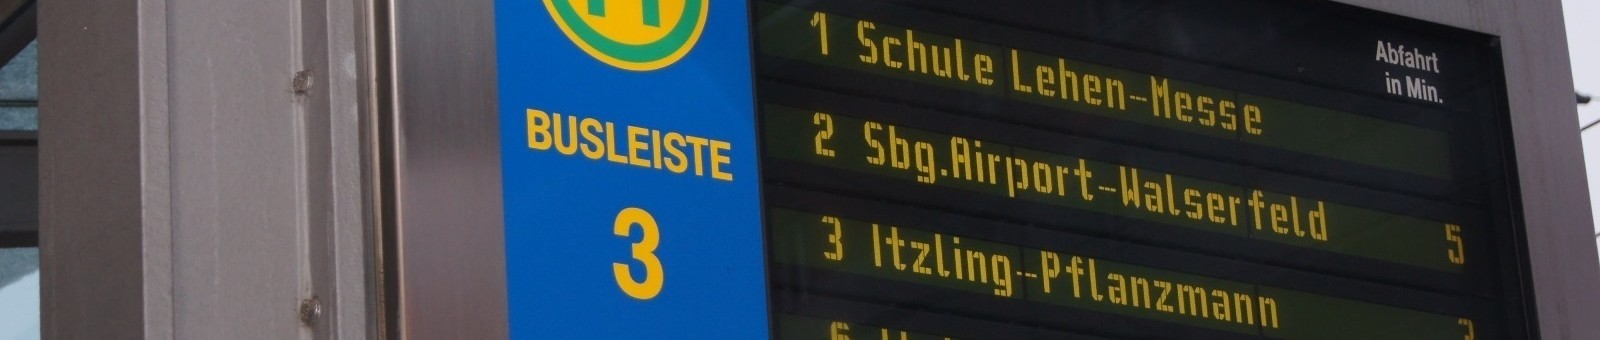     ザルツブルクの交通掲示板 